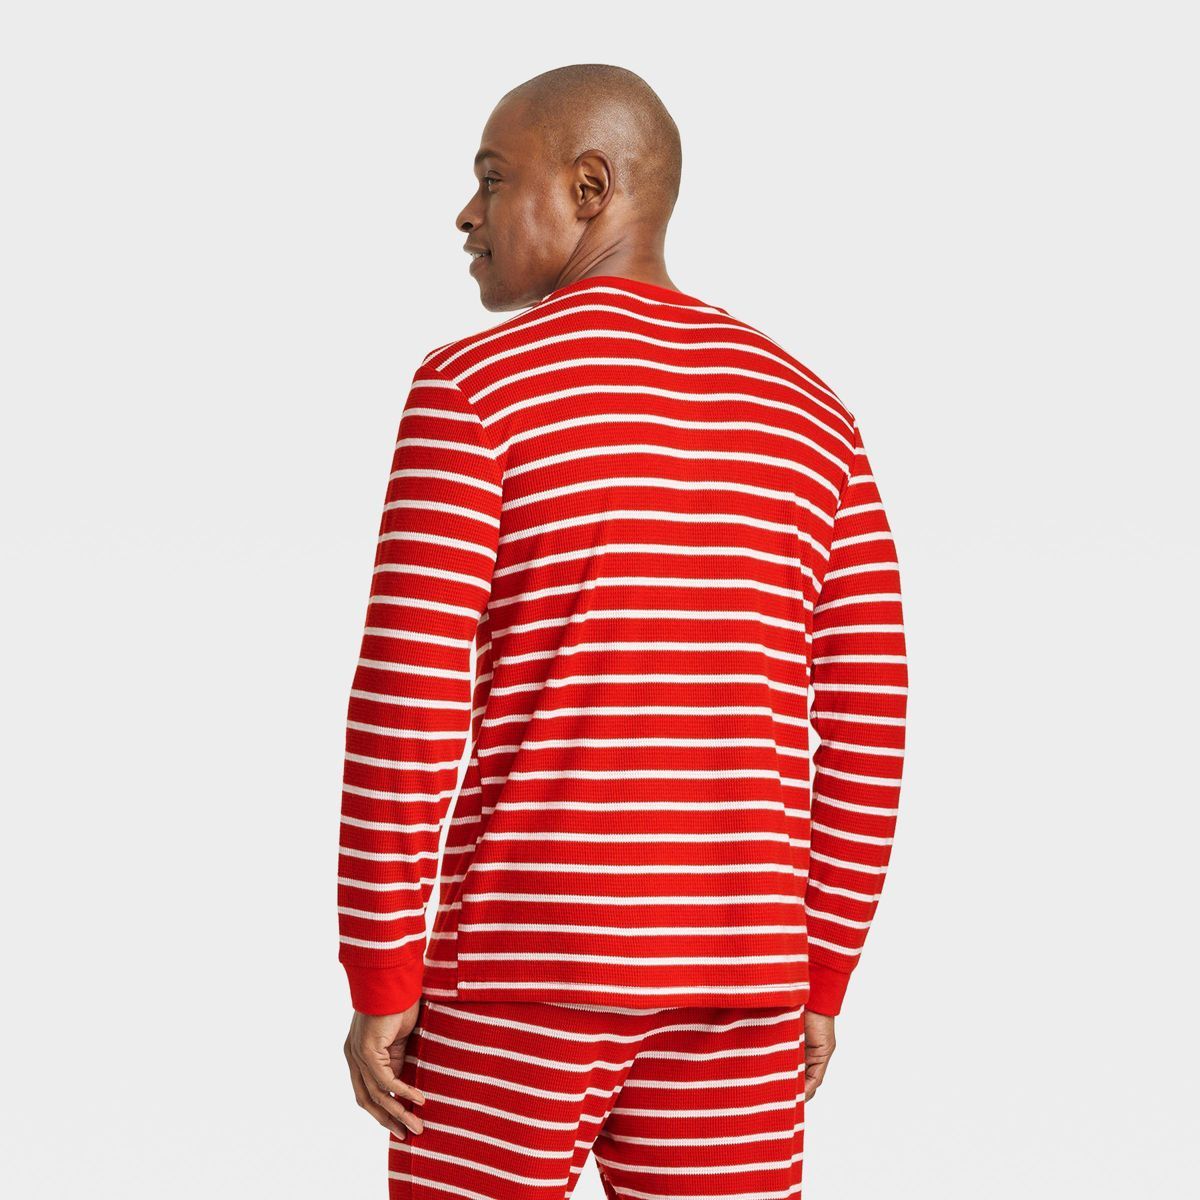 Men's Striped Matching Family Thermal Pajama Top - Wondershop™ Red | Target